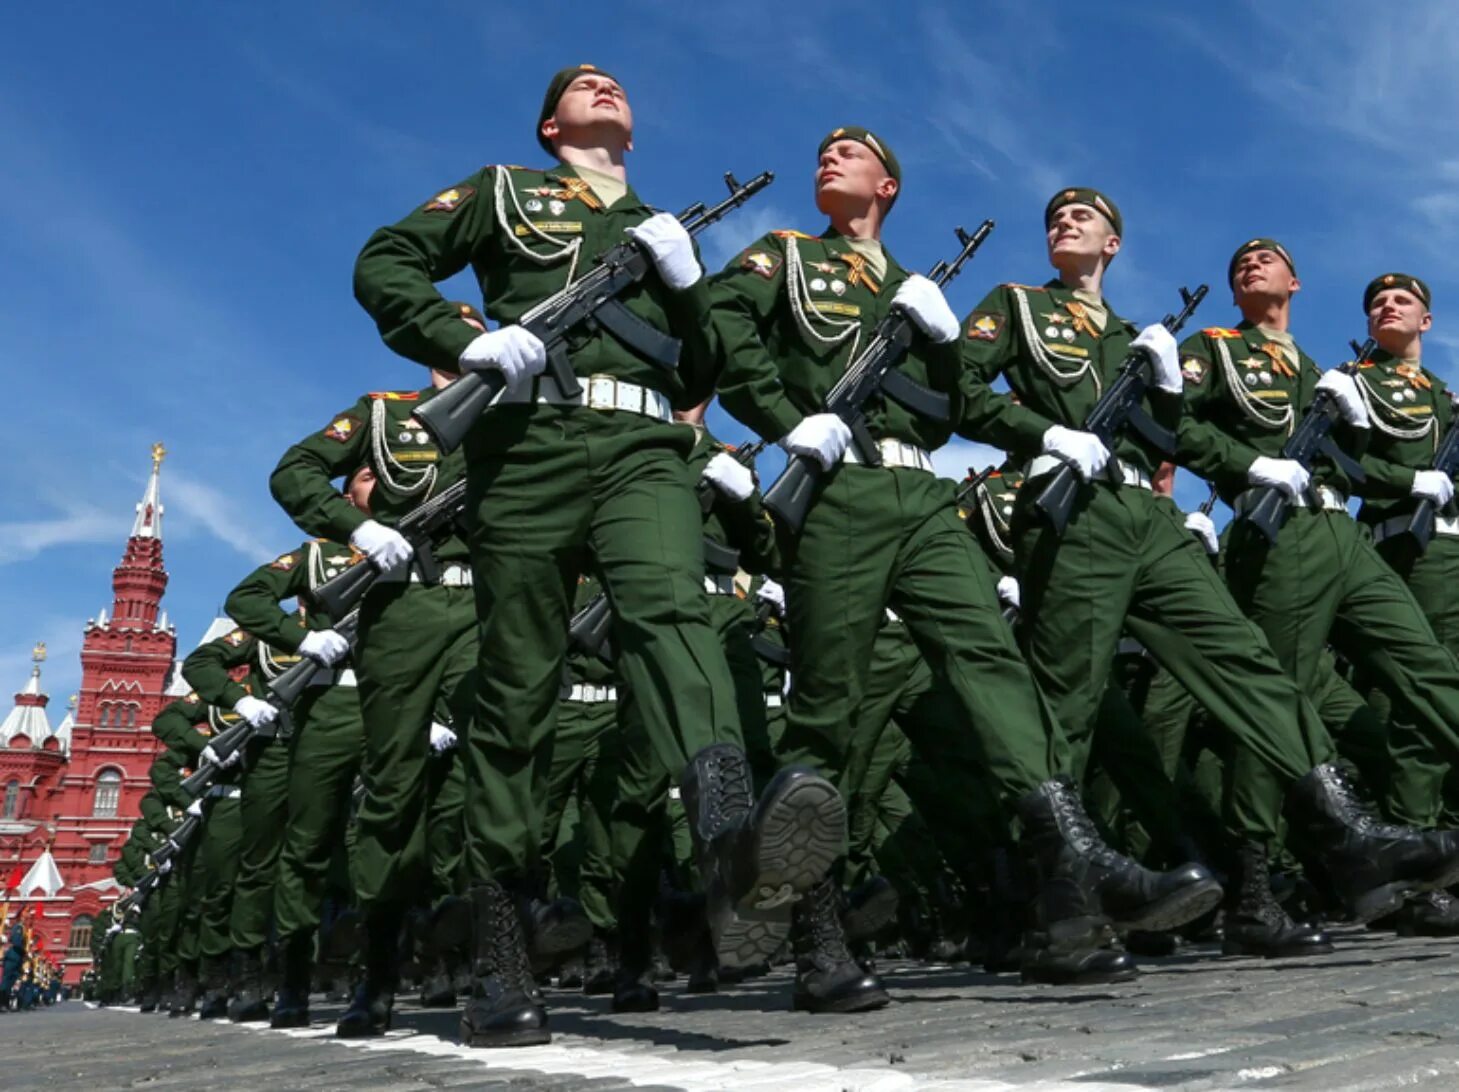 Солдаты на параде. Российский солдат на параде. Русские солдаты на параде. Современная Российская армия. Мвд защитники отечества